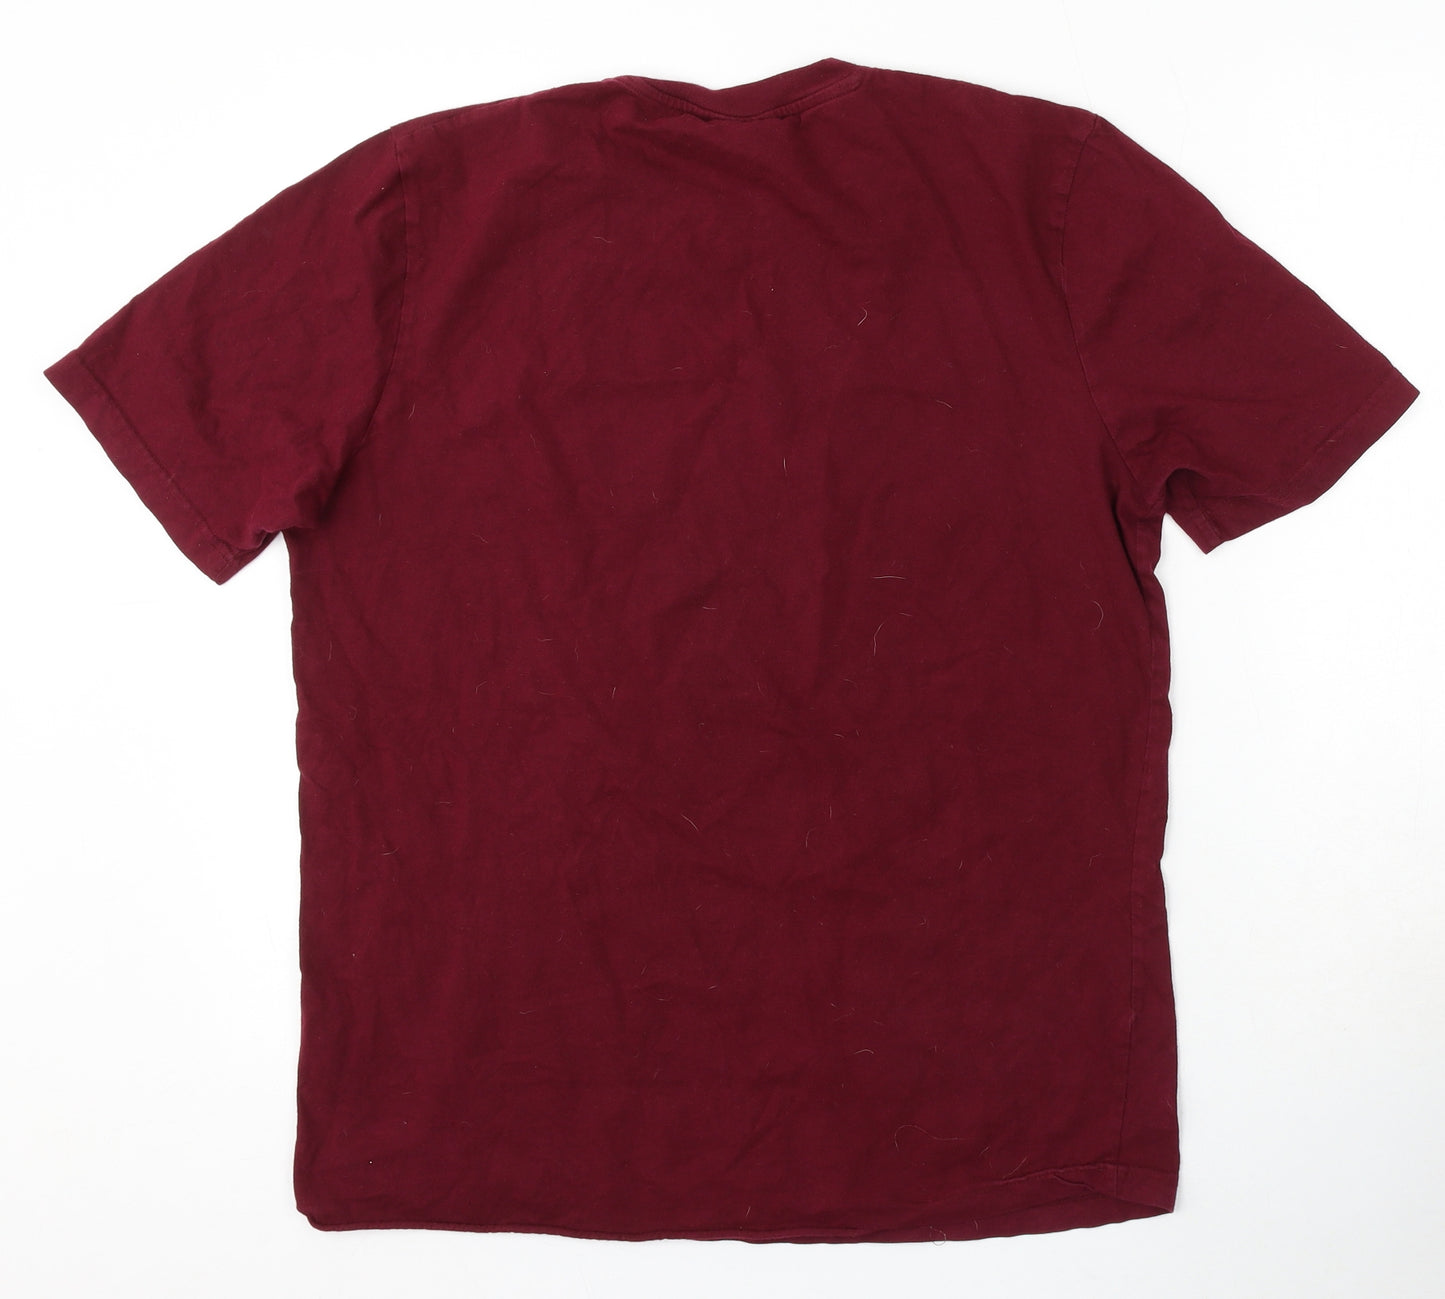 Kangaroo Poo Mens Red Cotton T-Shirt Size M Round Neck